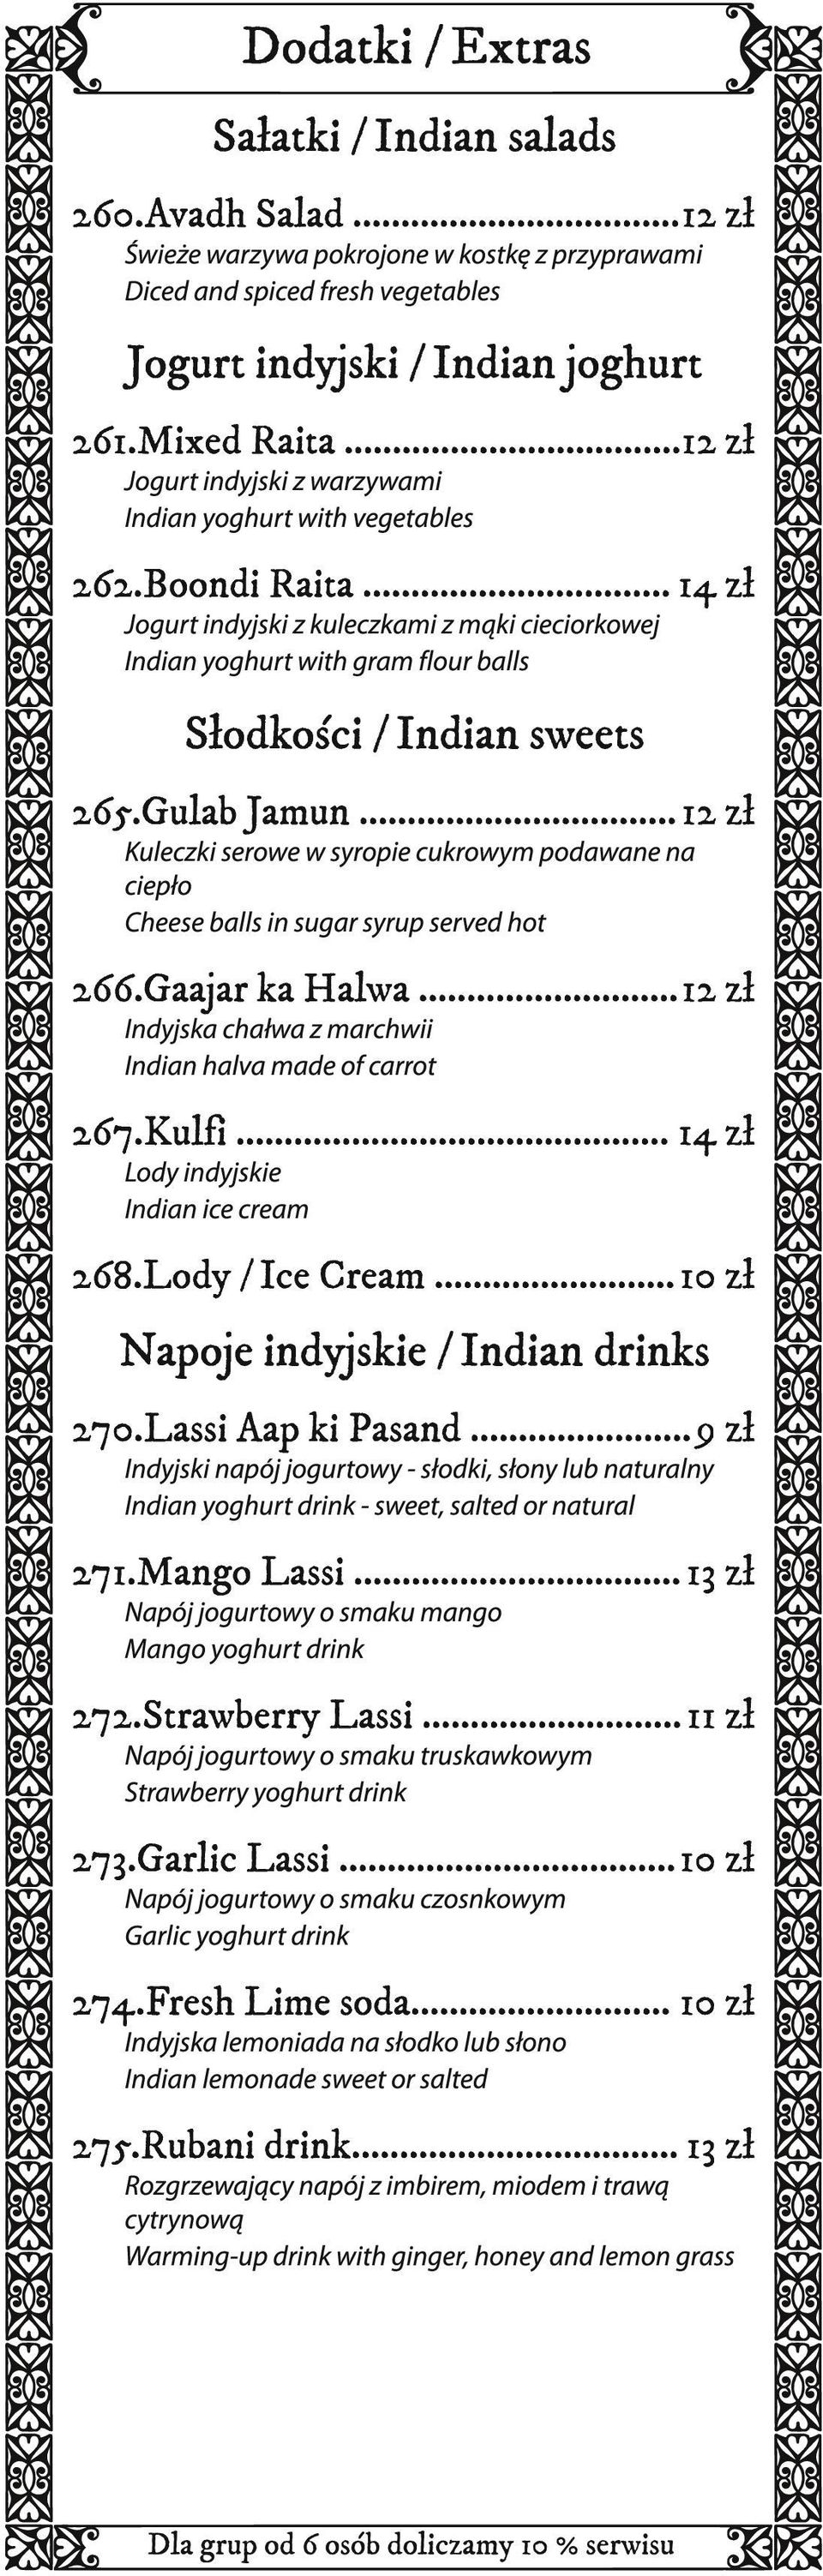 .. 14 zł Jogurt indyjski z kuleczkami z mąki cieciorkowej Indian yoghurt with gram flour balls Słodkości / Indian sweets 265.Gulab Jamun.